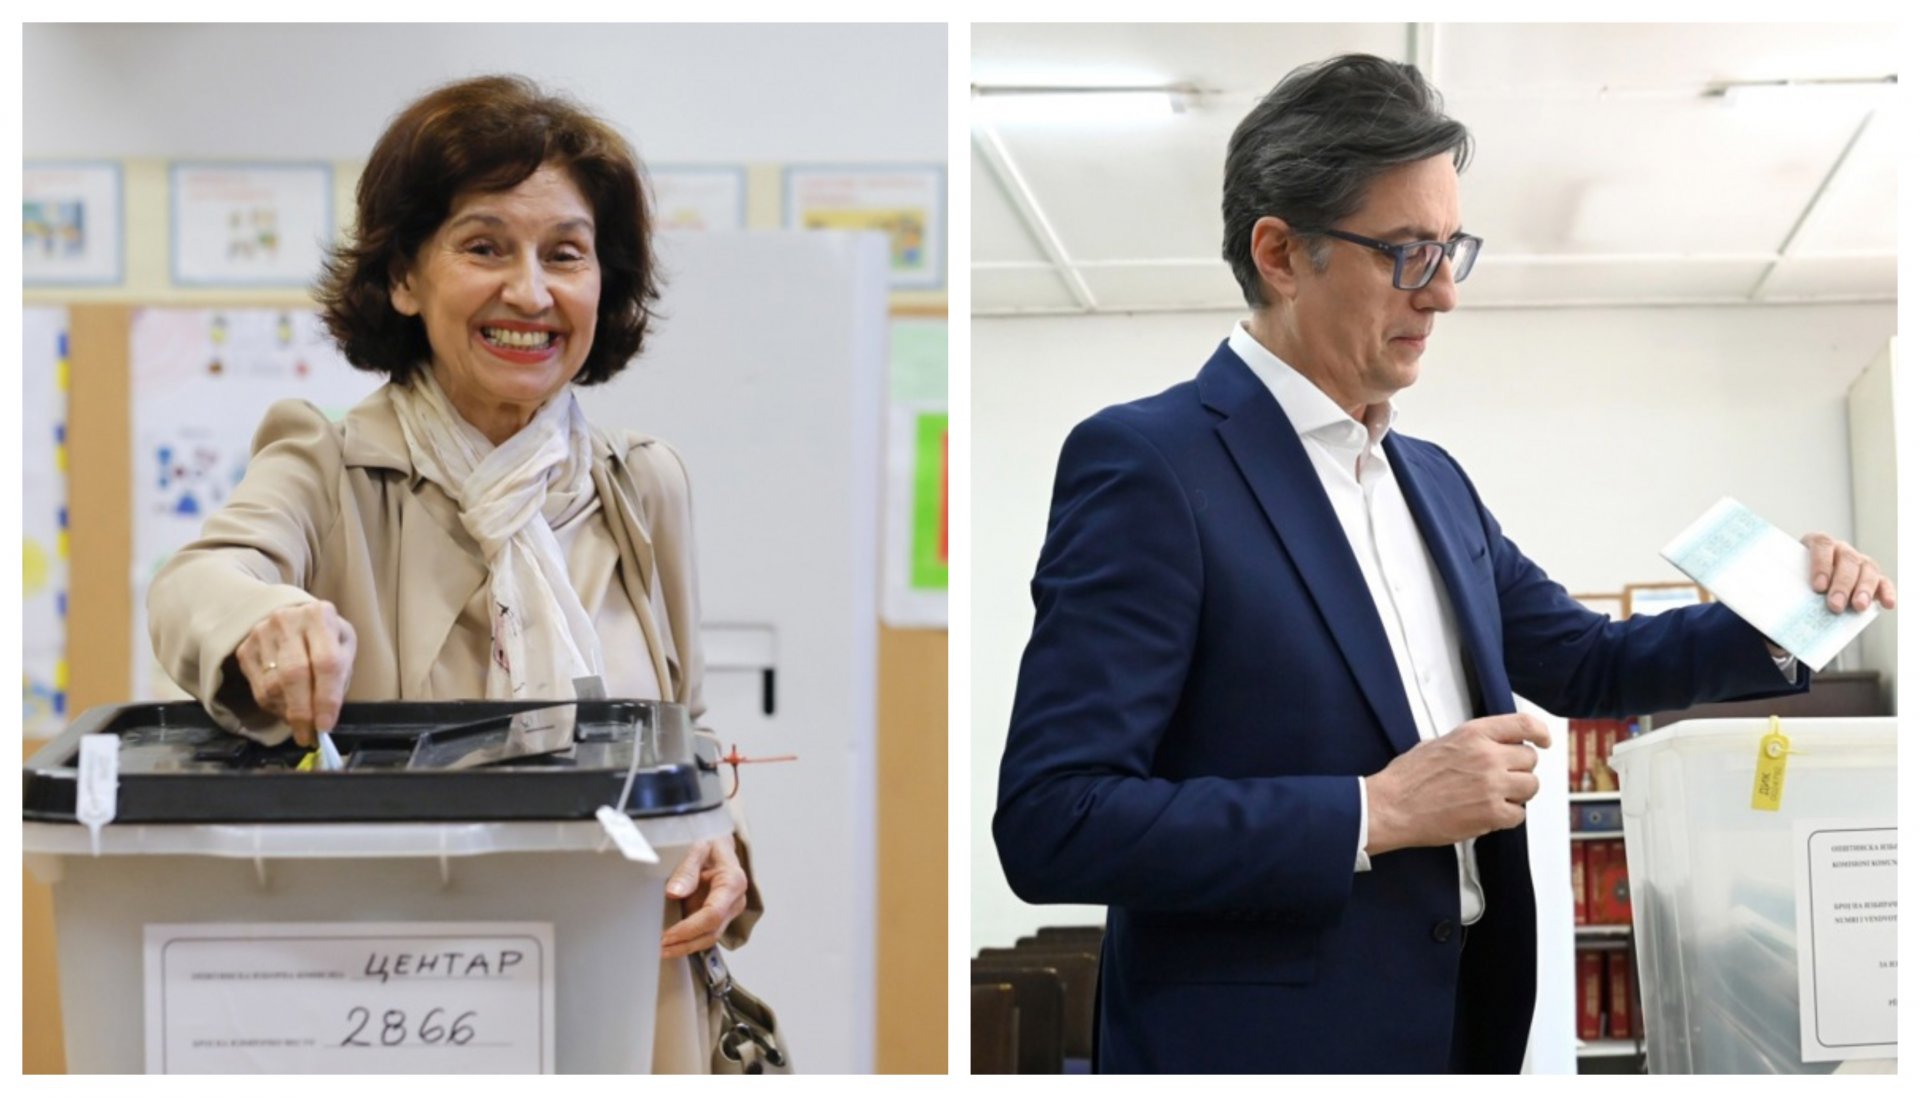 Zvanični rezultati izbora u Makedoniji: Siljanovska Davkova i Pendarovski u drugom krugu